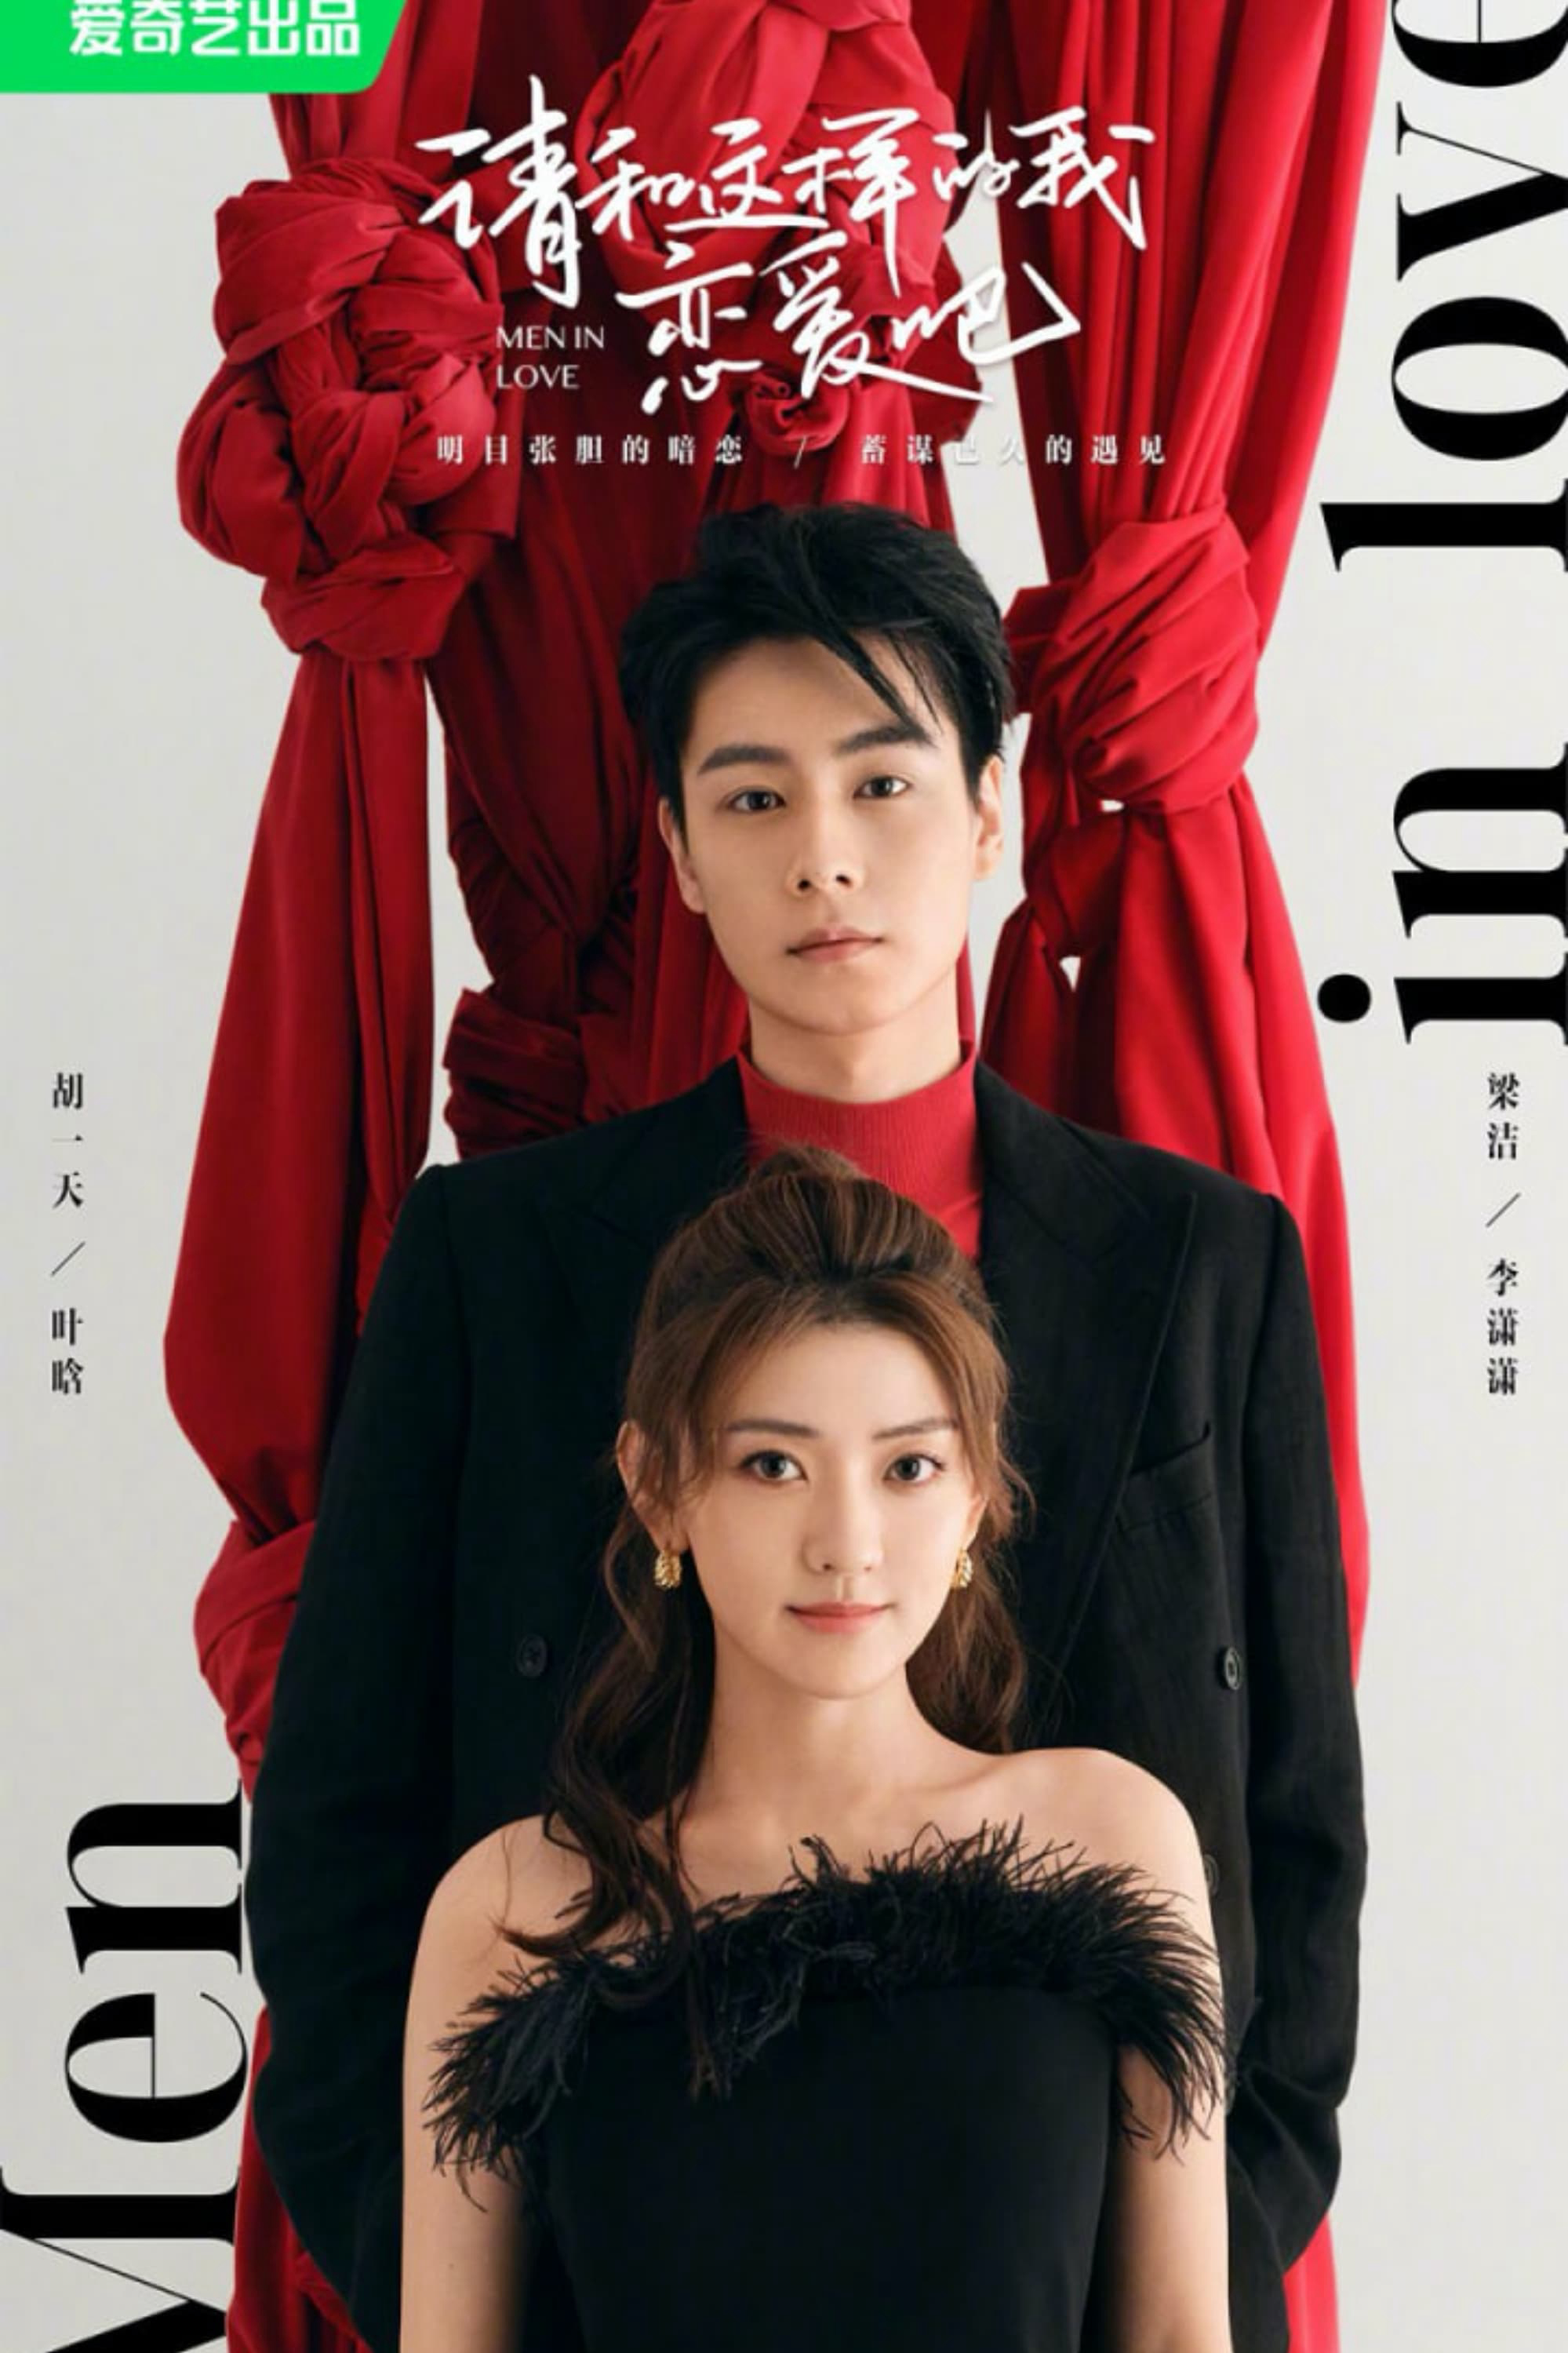 Poster Phim Xin Hãy Yêu Anh Như Vậy (Men In love)